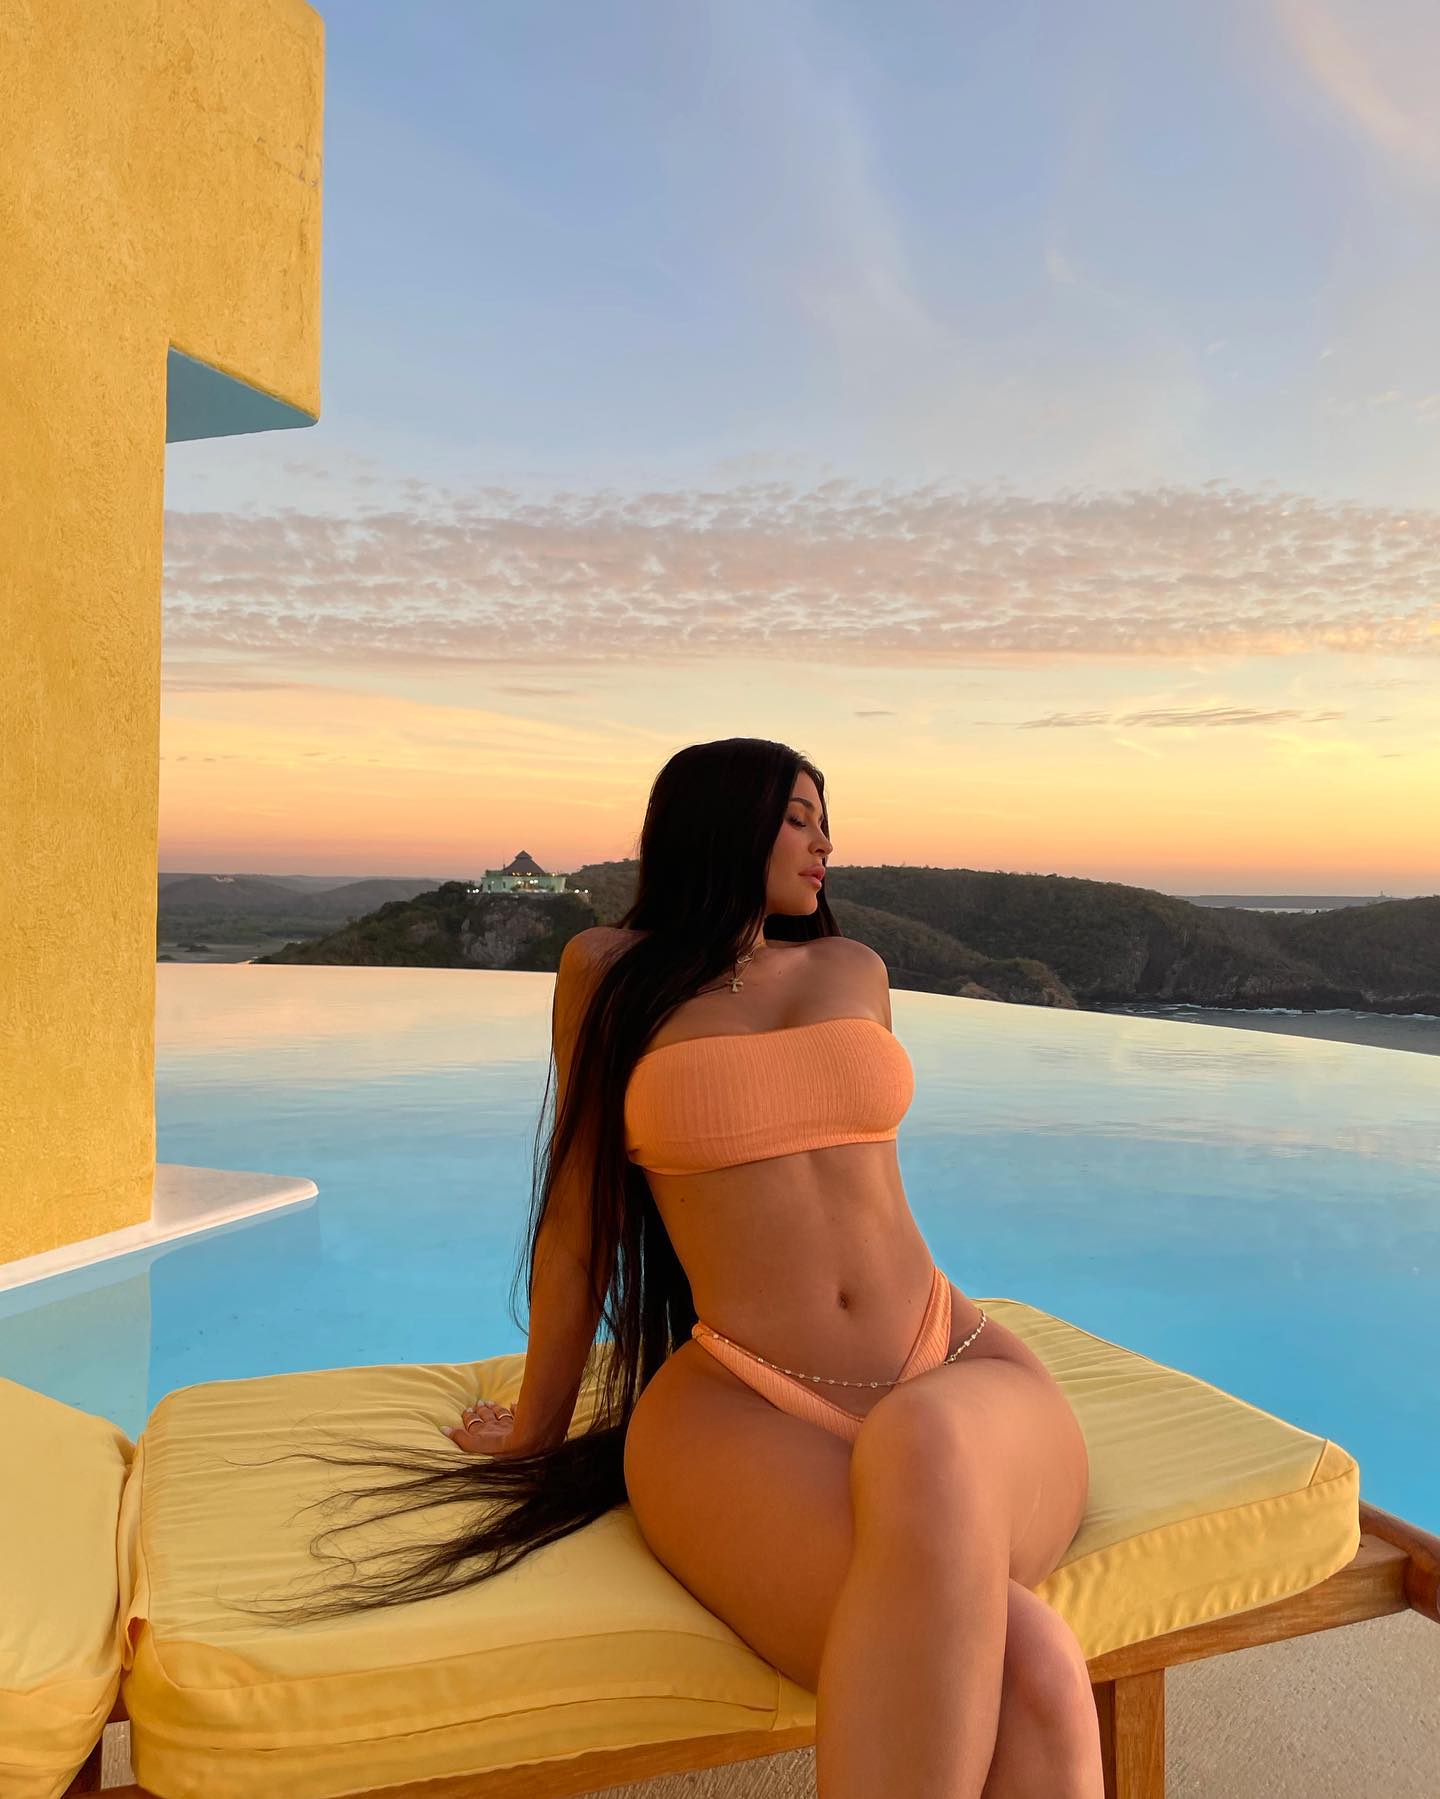 Kylie Jenner Images Download